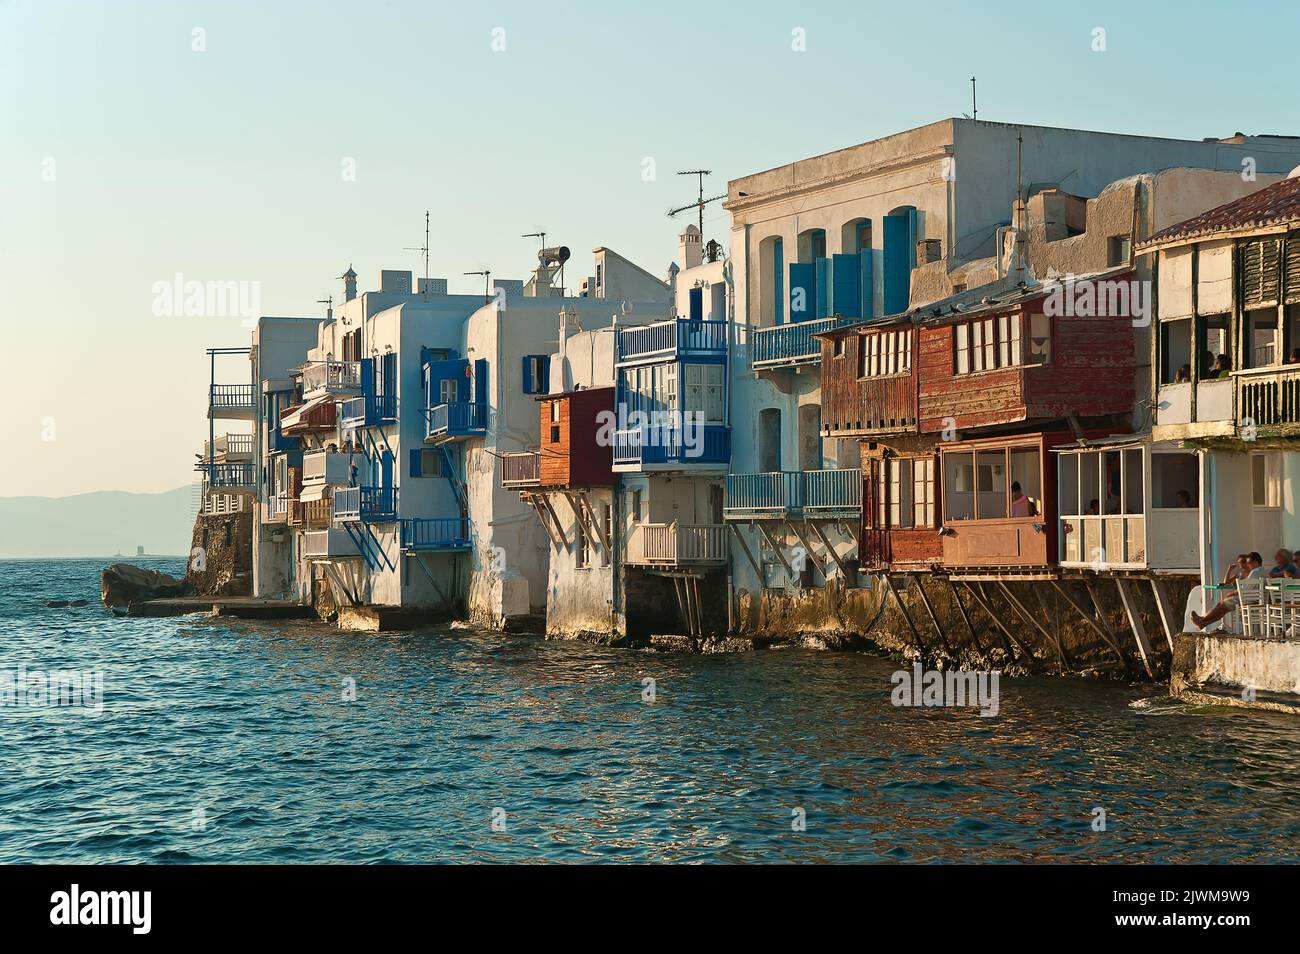 Alefkandra, petite Venise (Mikri Venetia) dans une île grecque de Mykonos, Grèce au coucher du soleil Banque D'Images